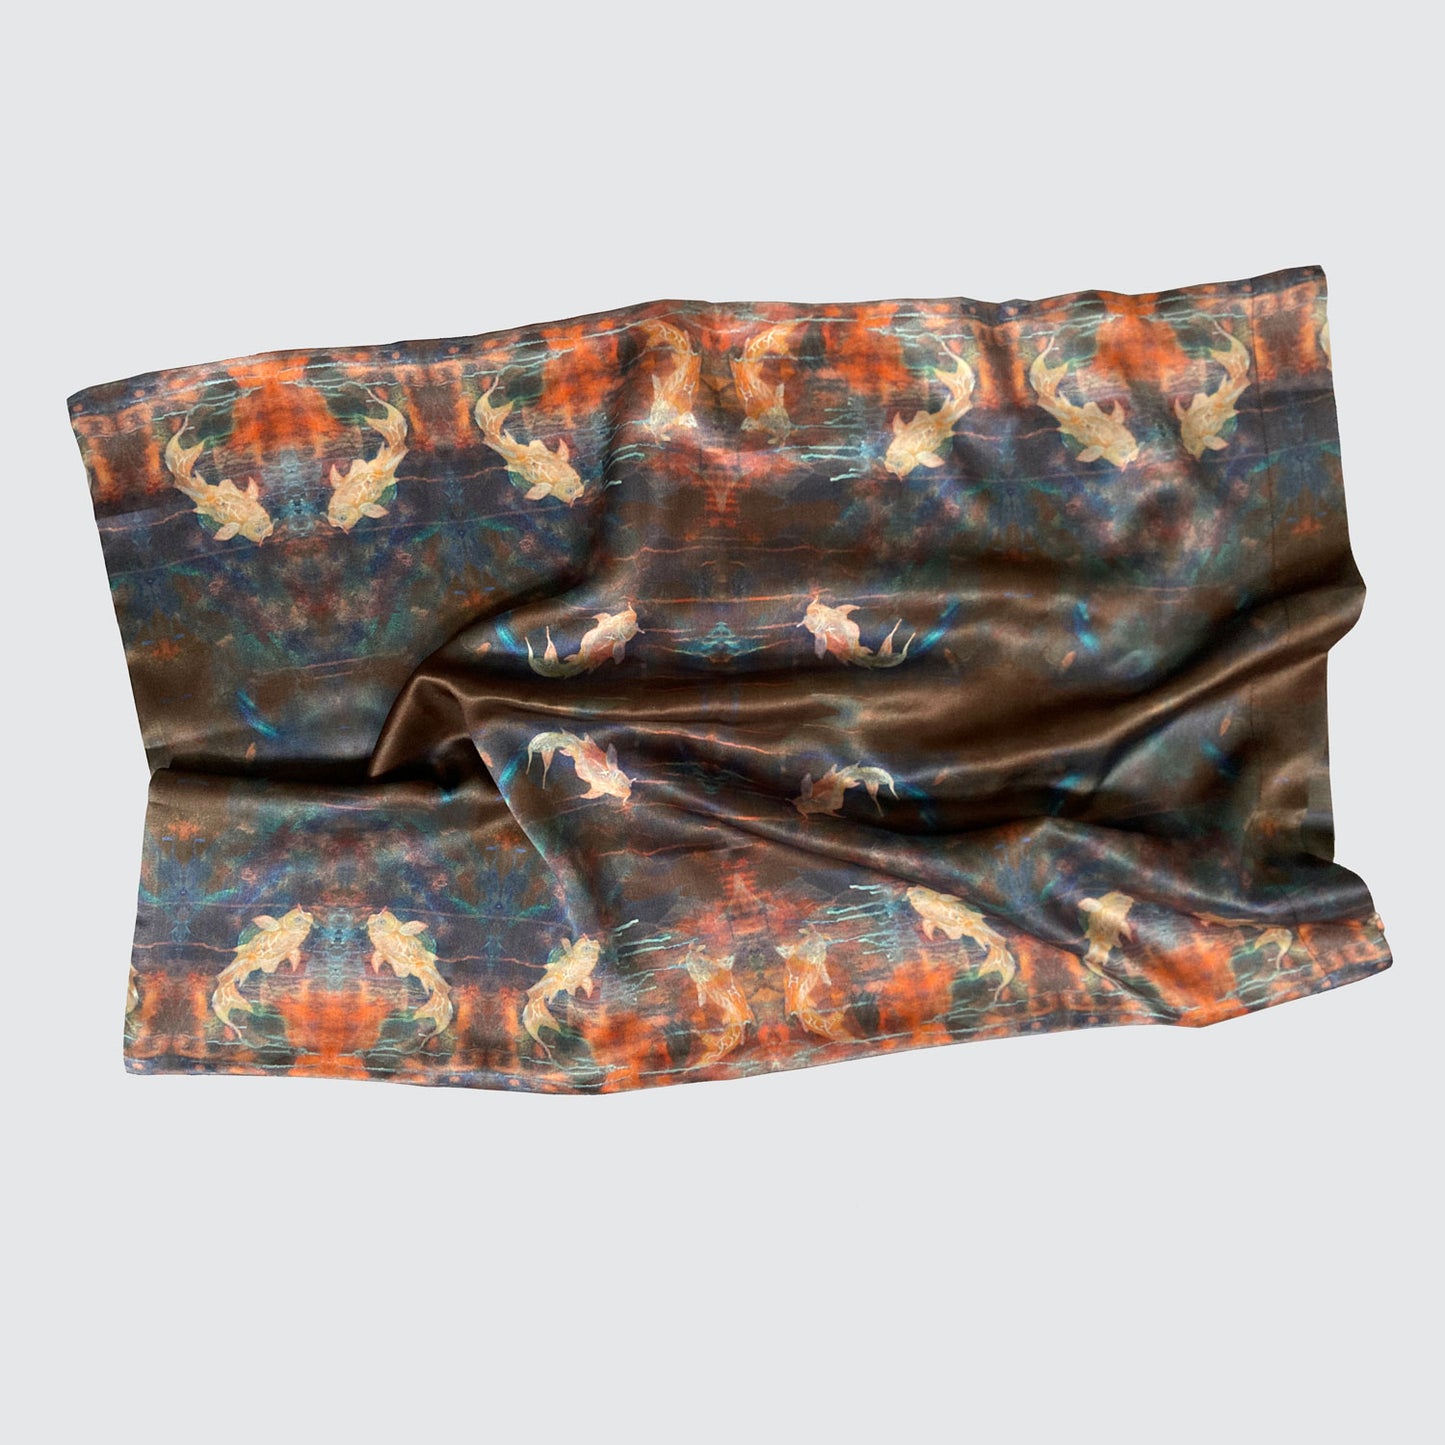 Silk Pillowcase - Blue Orange With Koi Fish Design